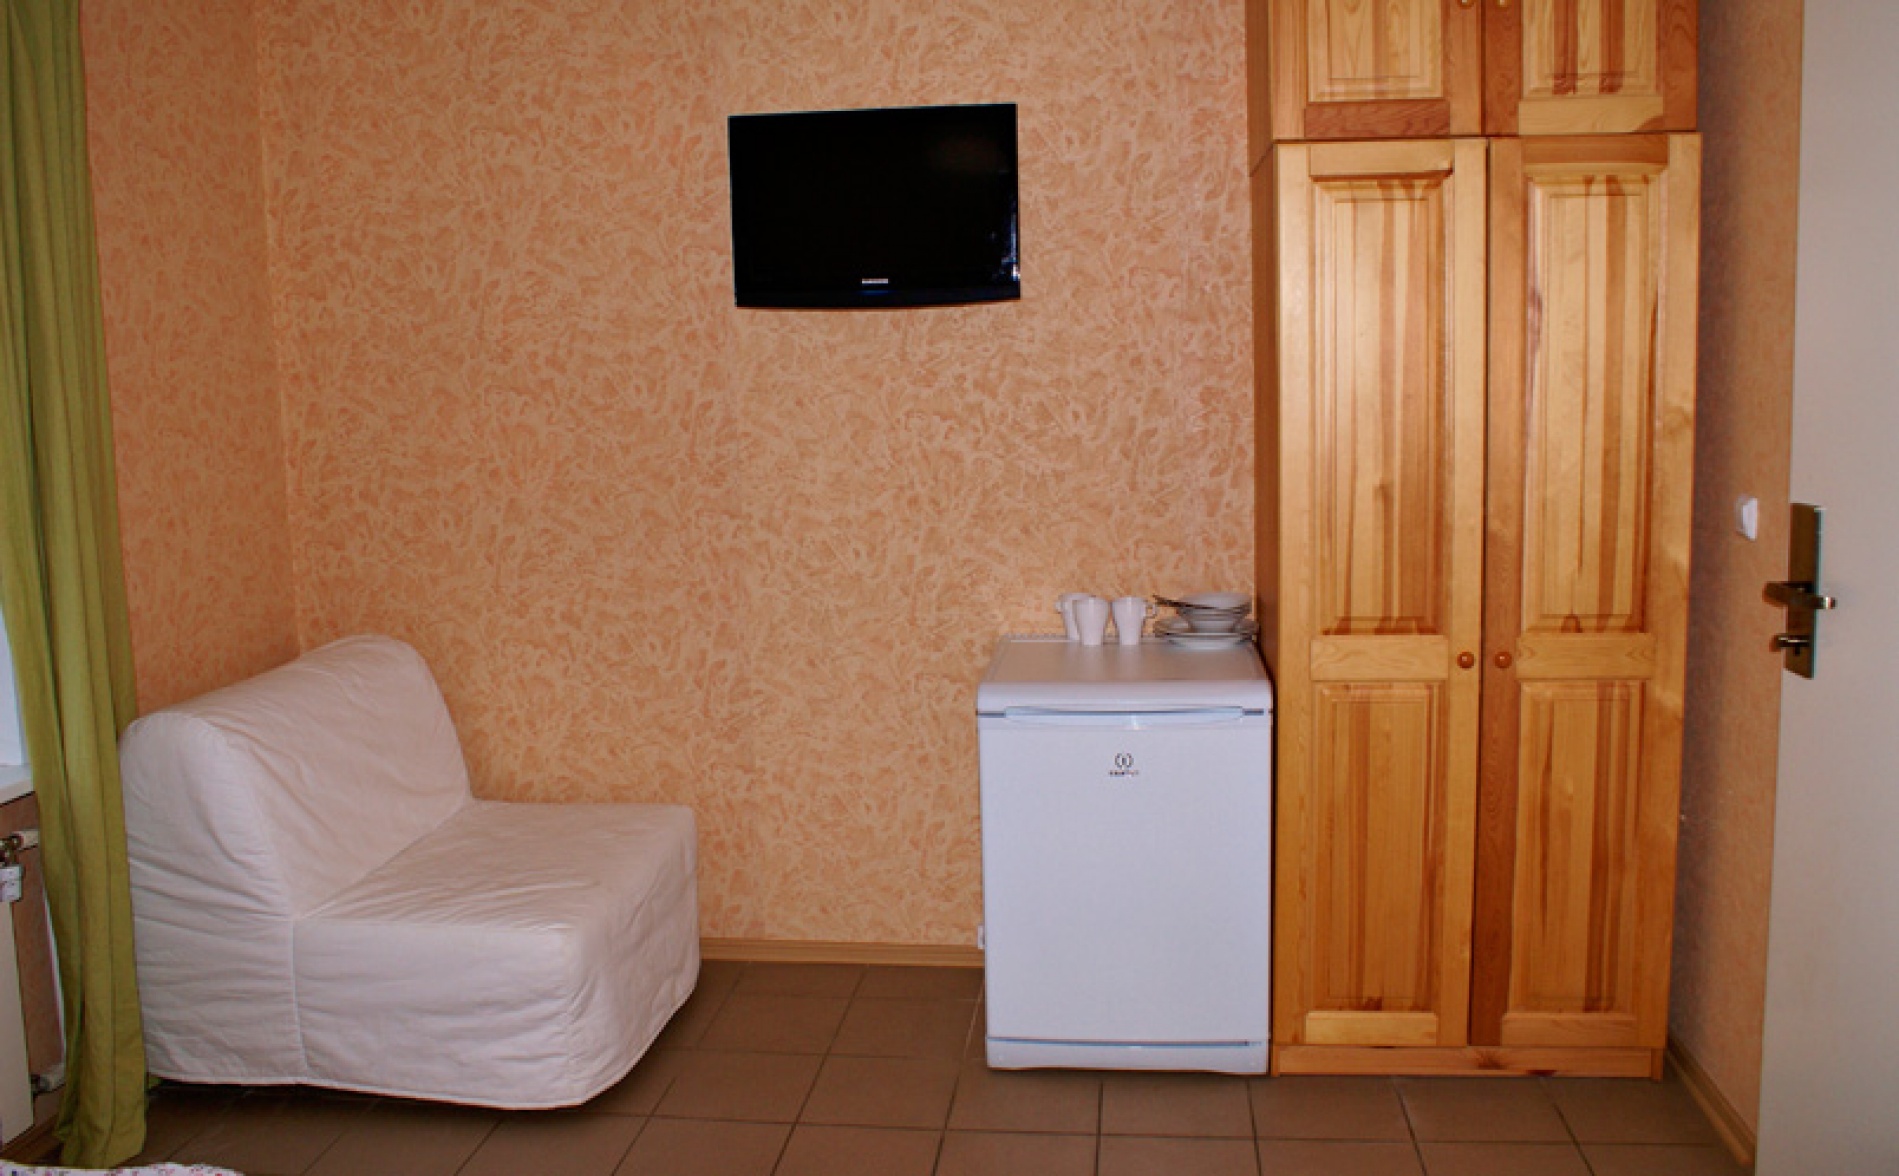 База отдыха «Биг Фишъ» Ярославская область 3-местный номер с ТВ и холодильником, фото 2